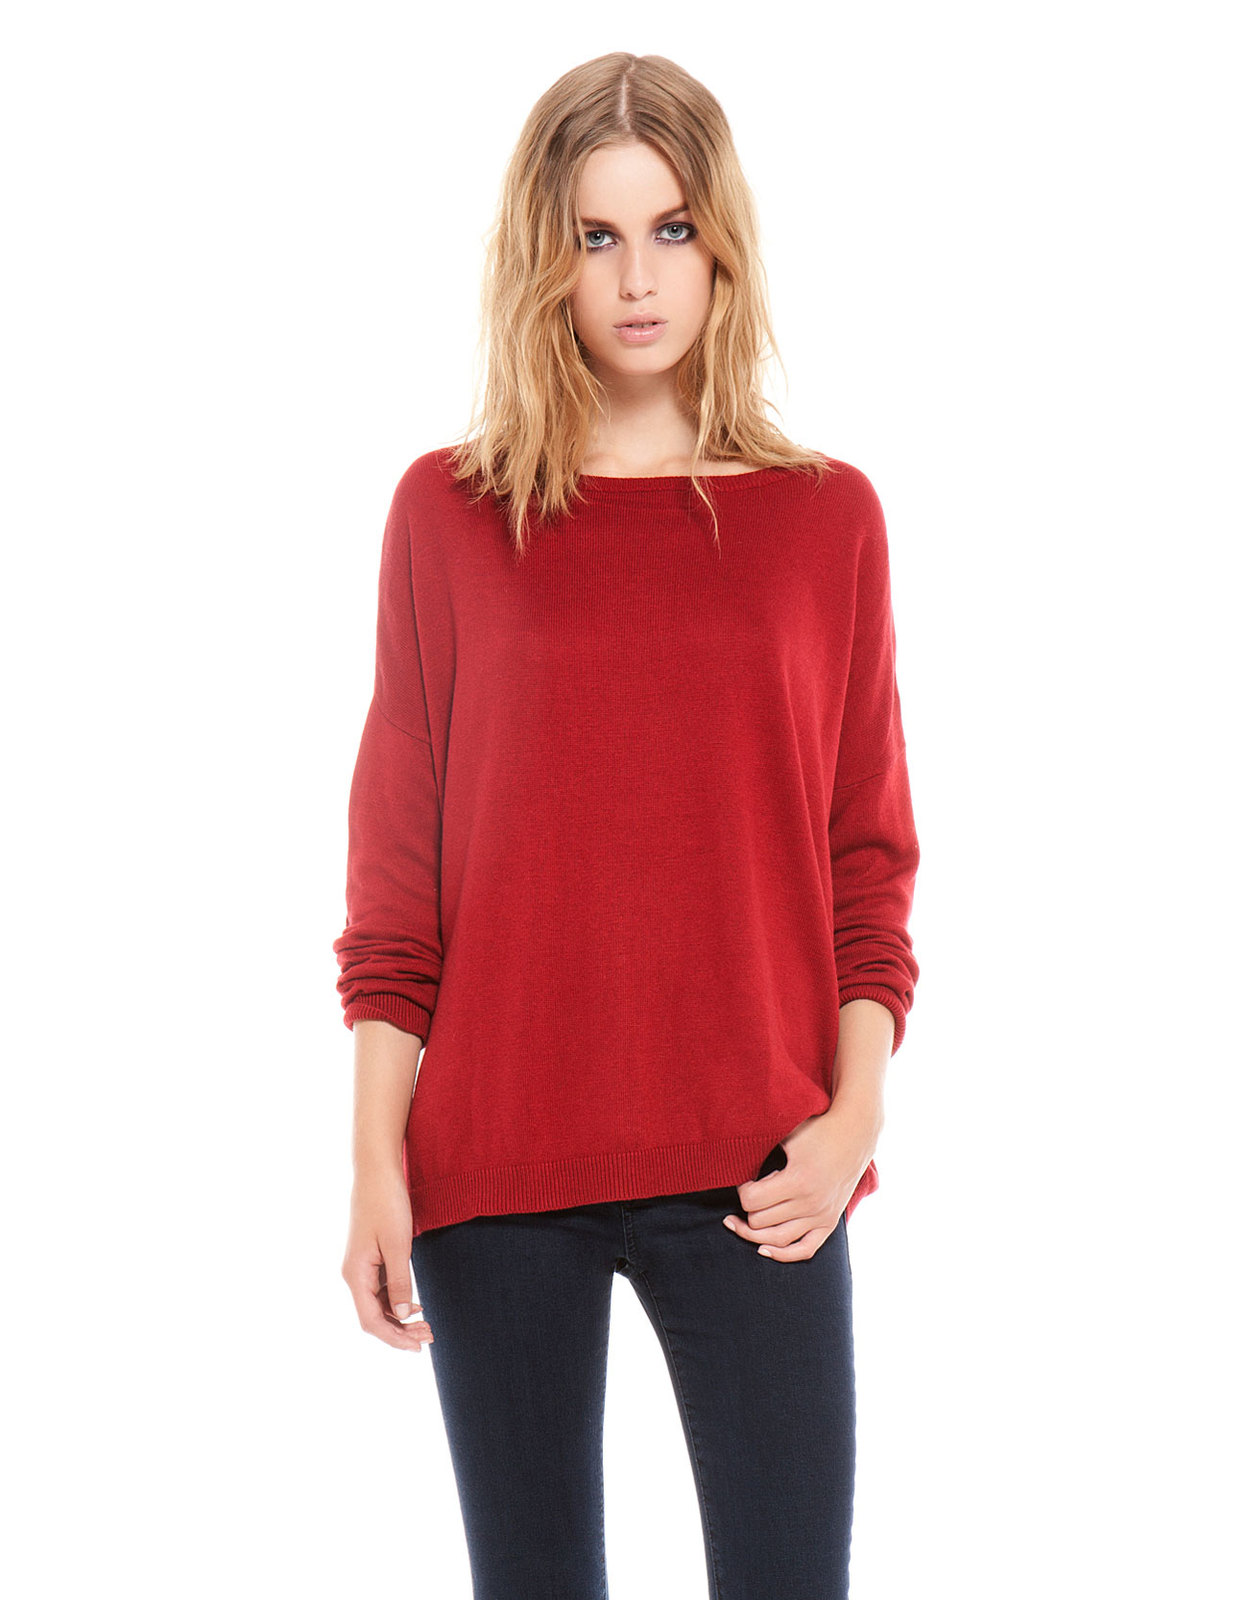 Bershka vörös színű kötött pulóver fotója